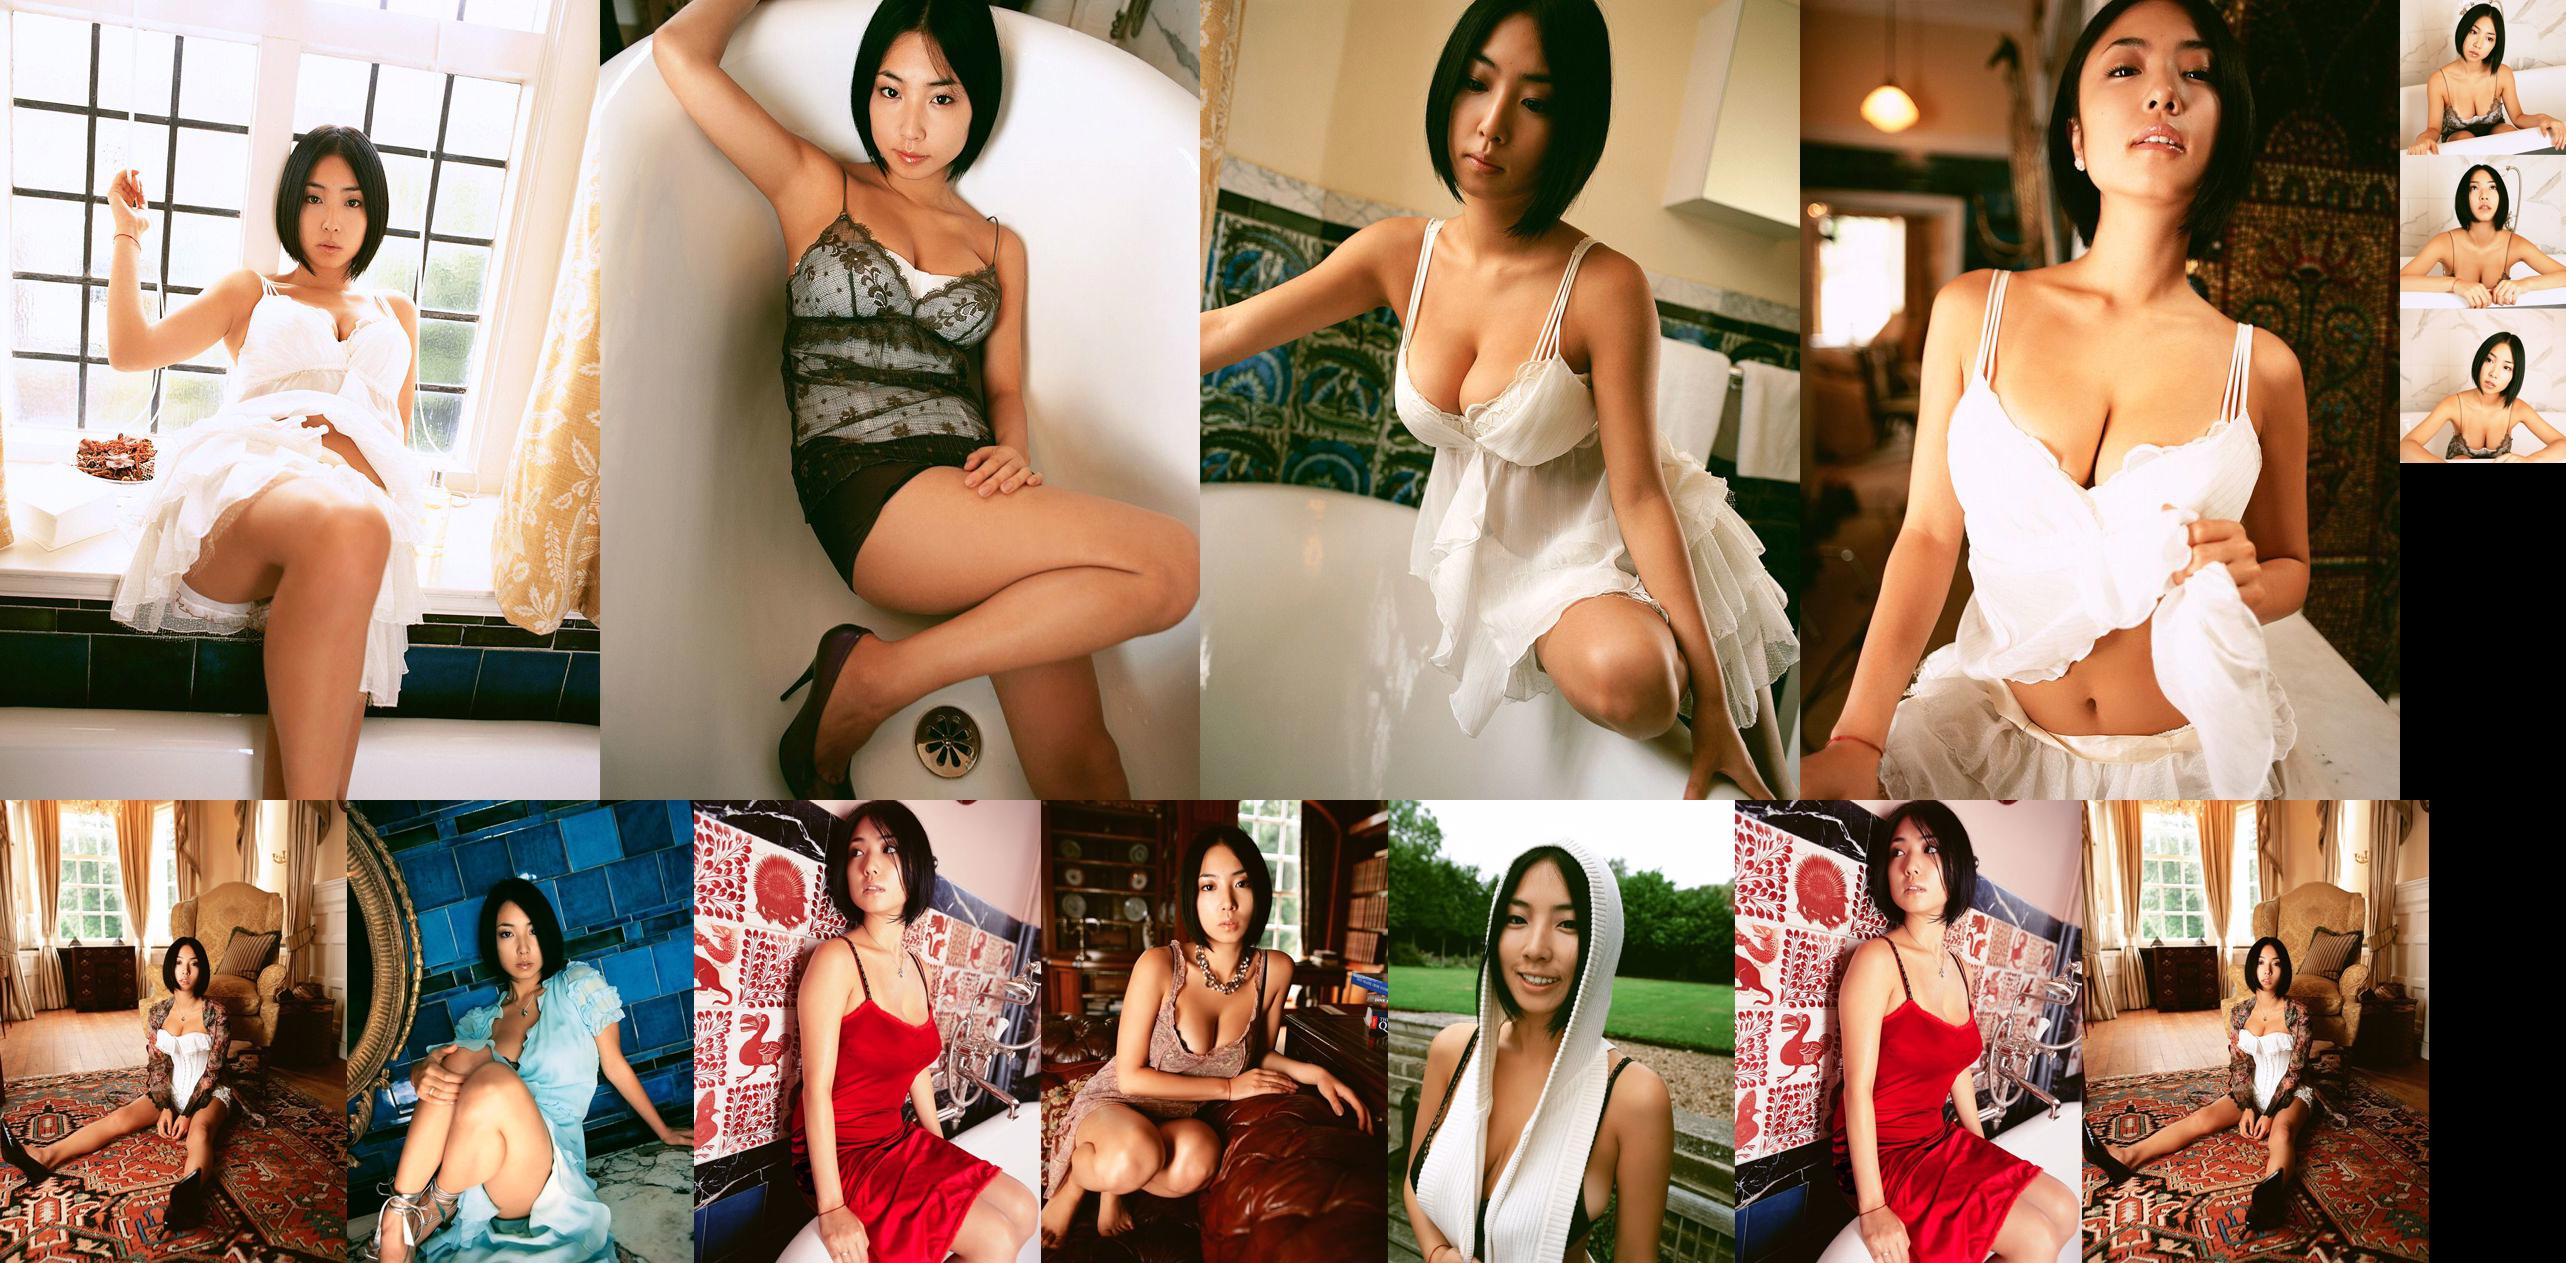 Megumi "Love & Spice" [Bild.tv] No.d63b50 Seite 1